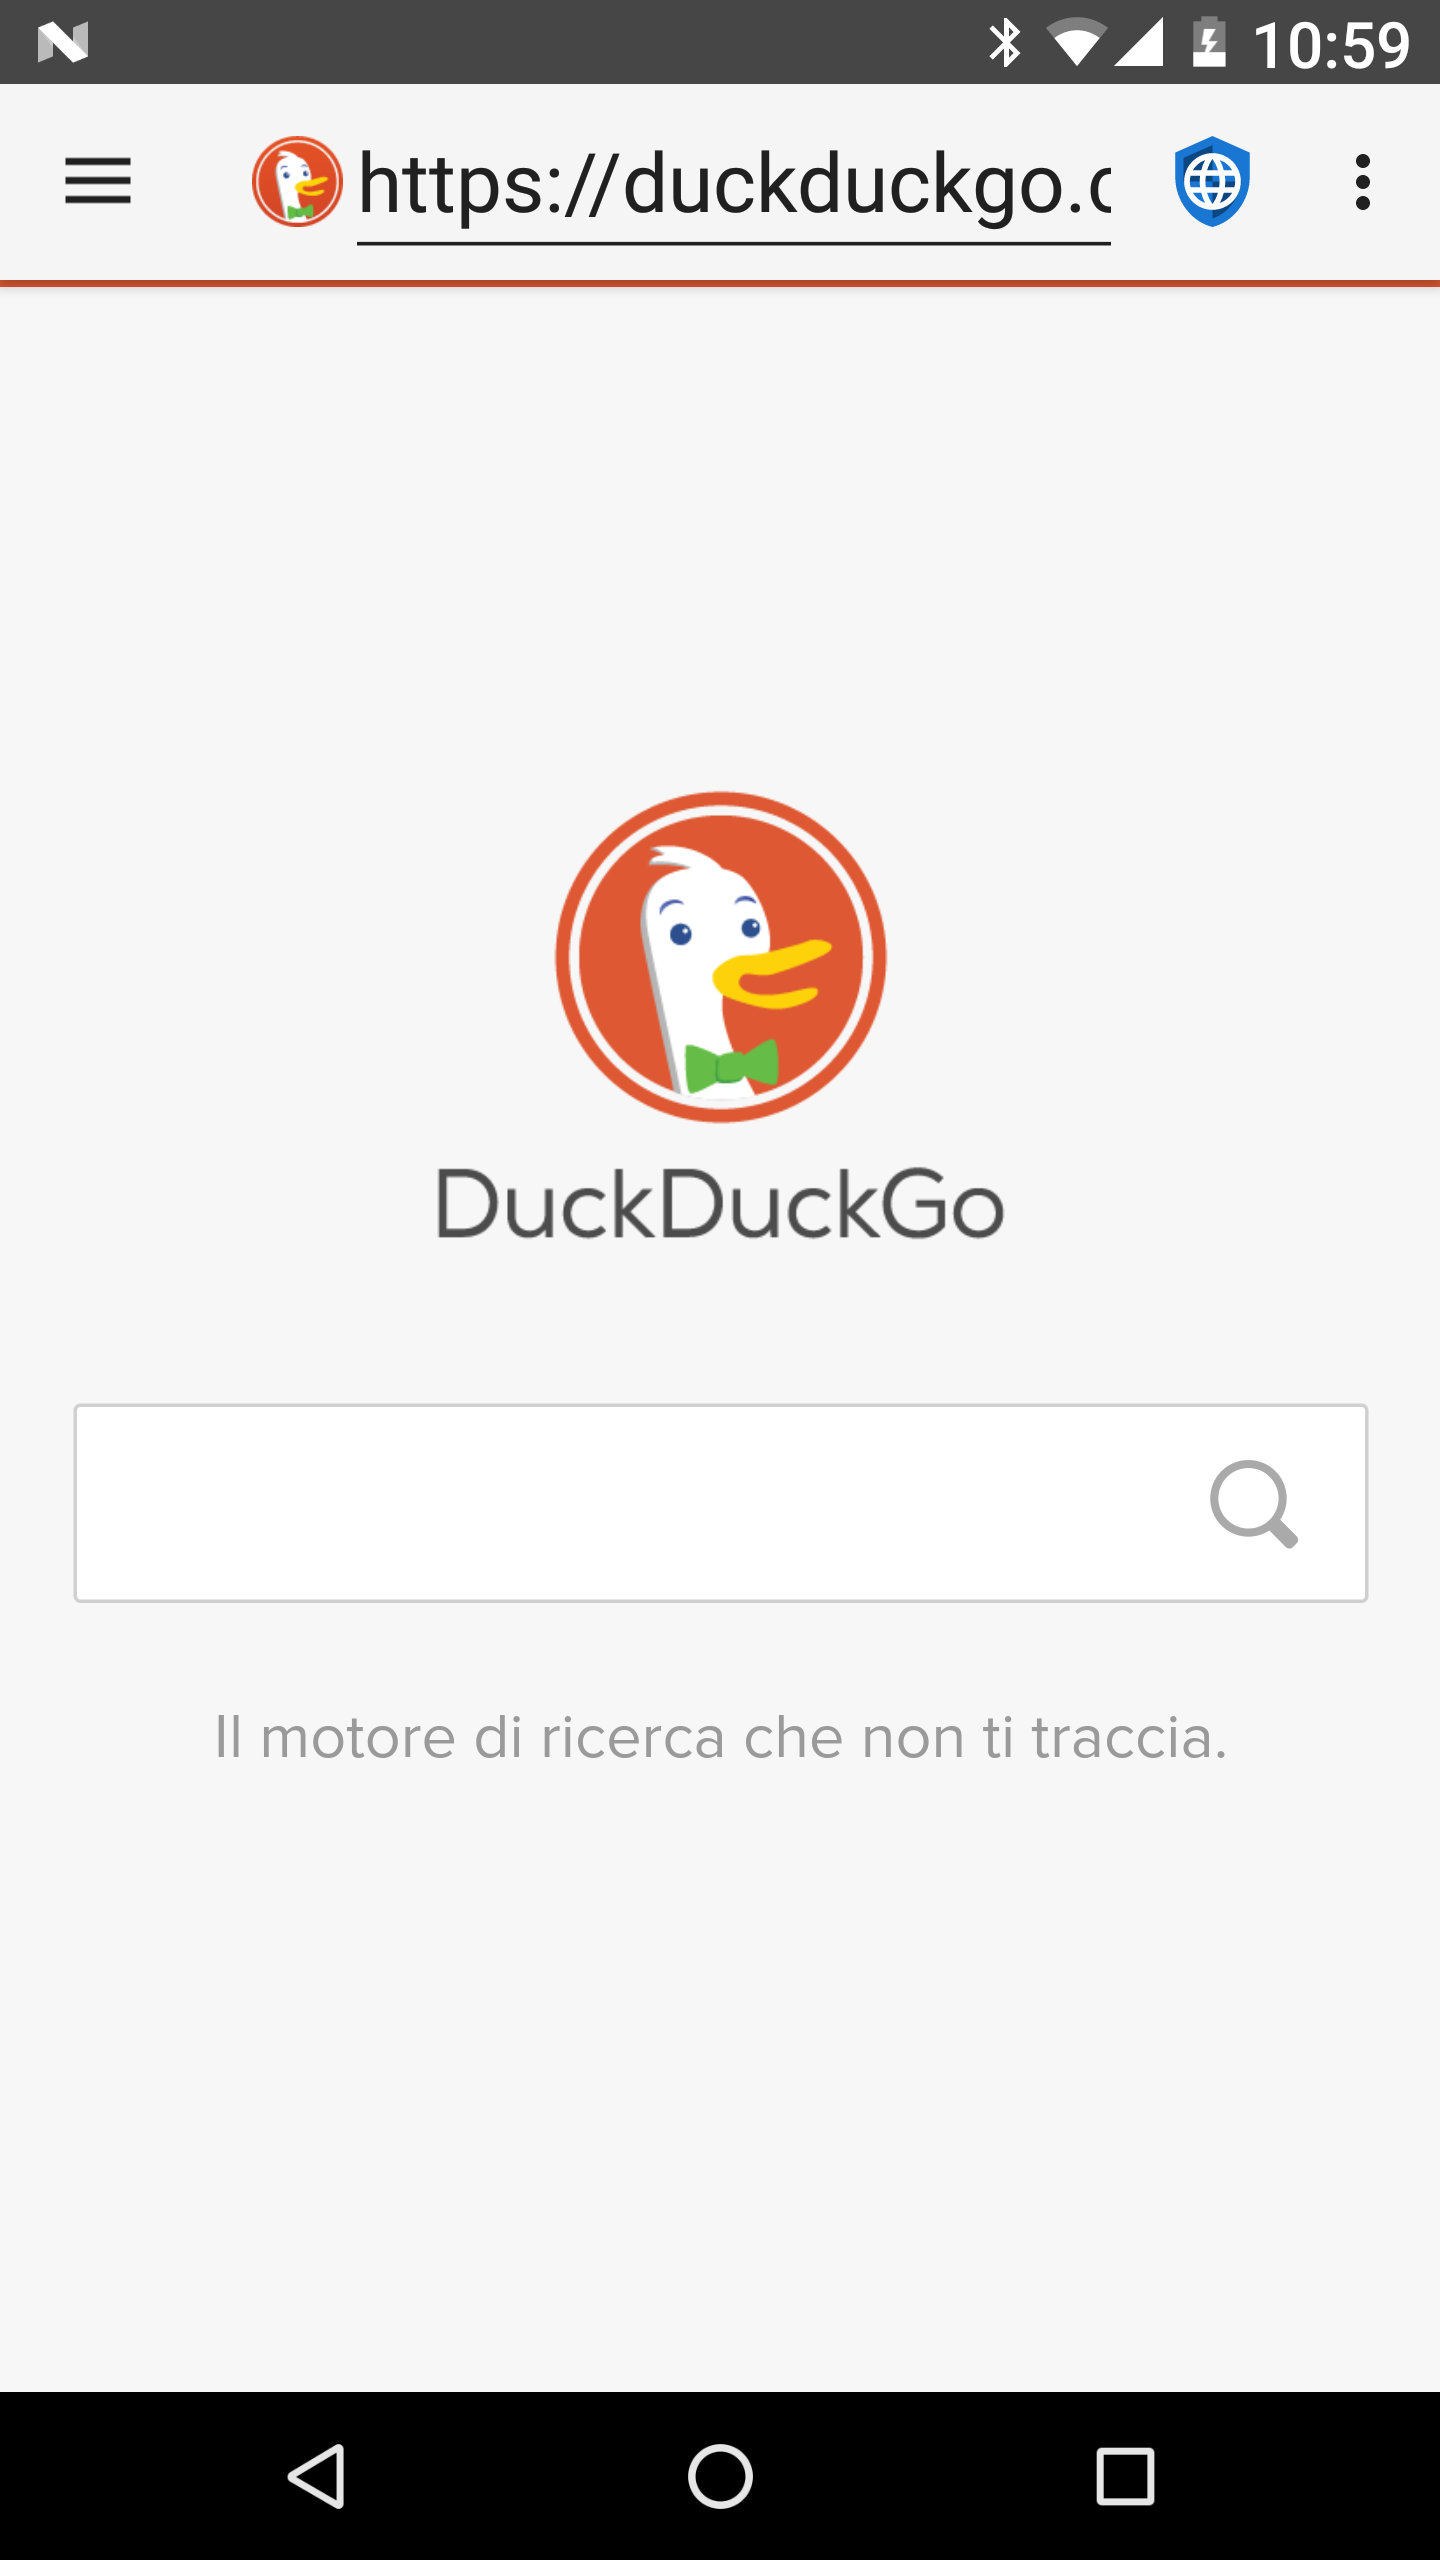 01 - Duck Duck Go - it.png